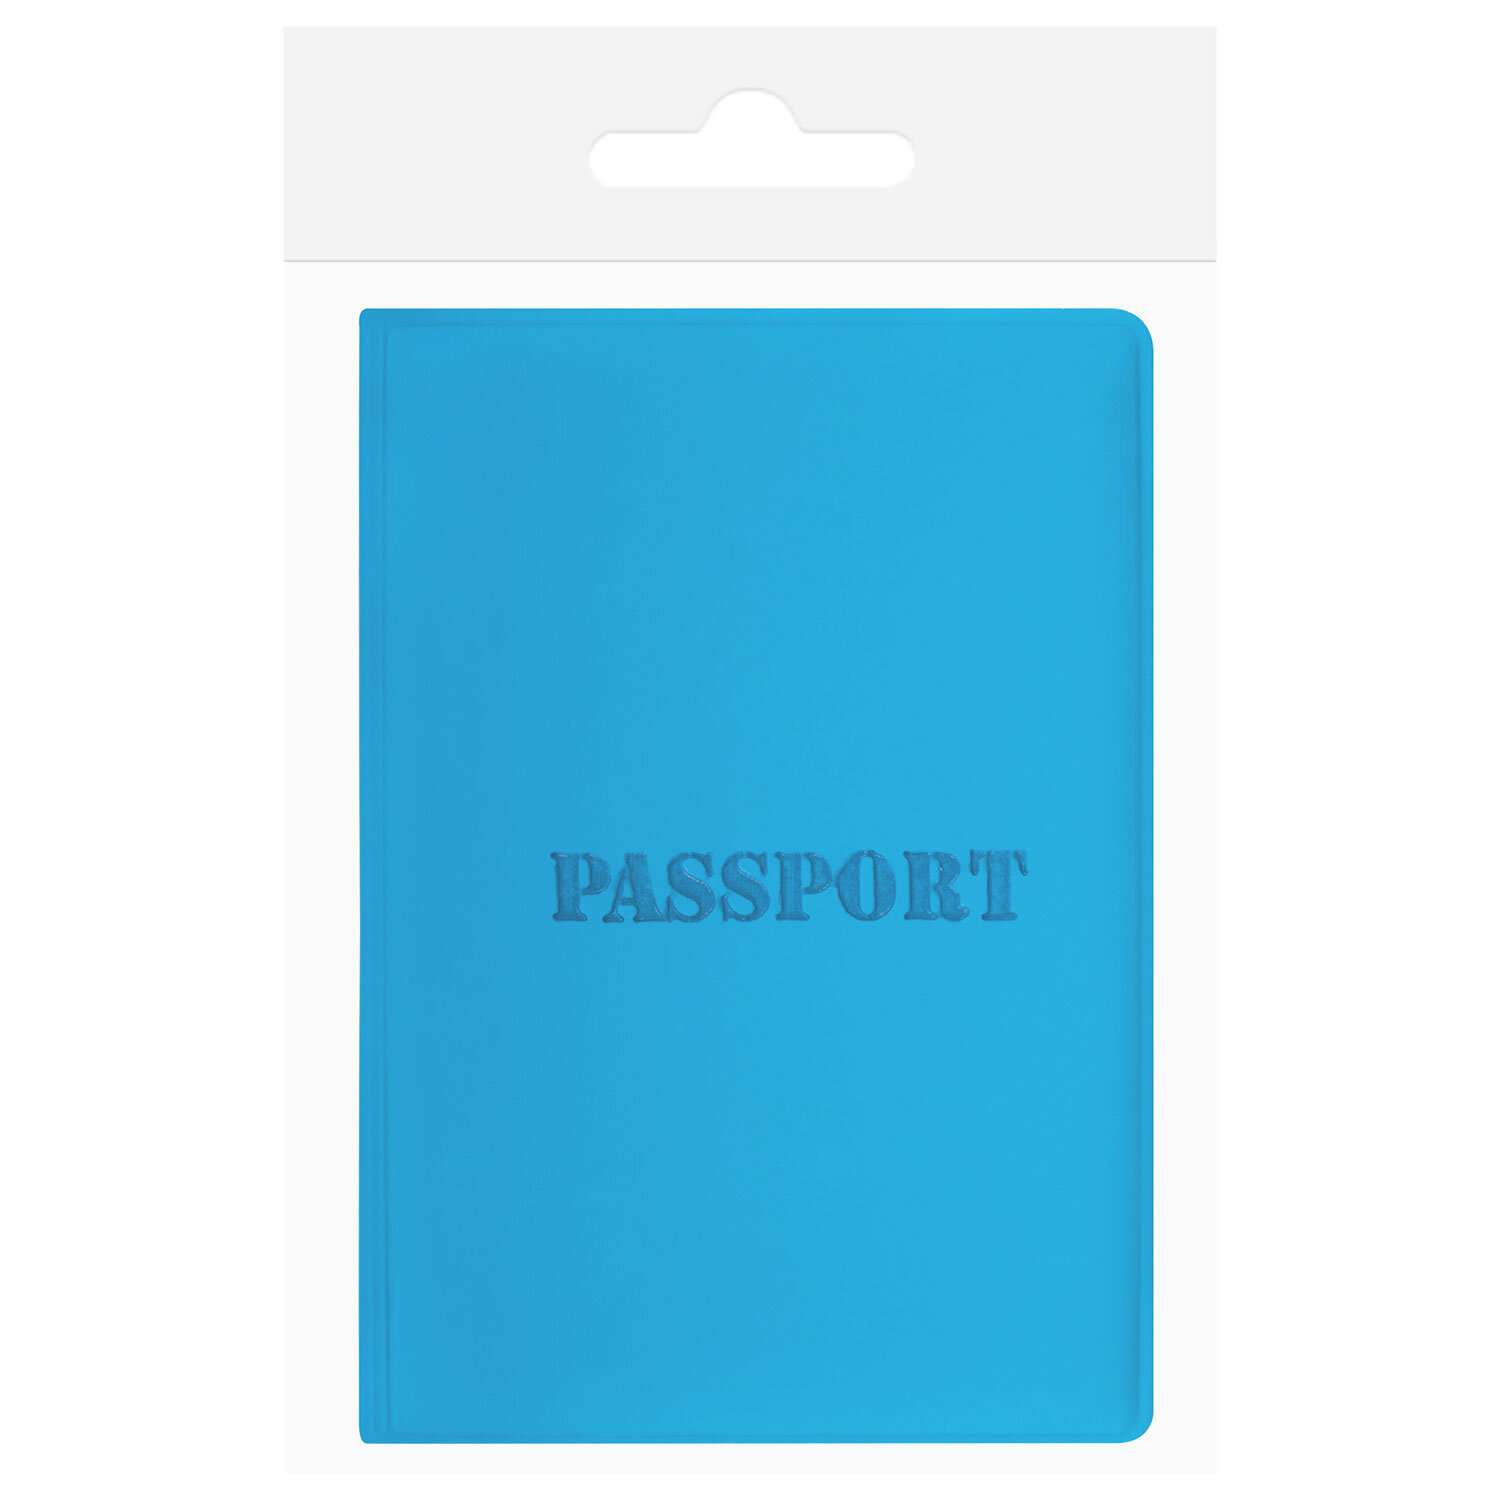 Обложка на паспорт Staff чехол - фото 9